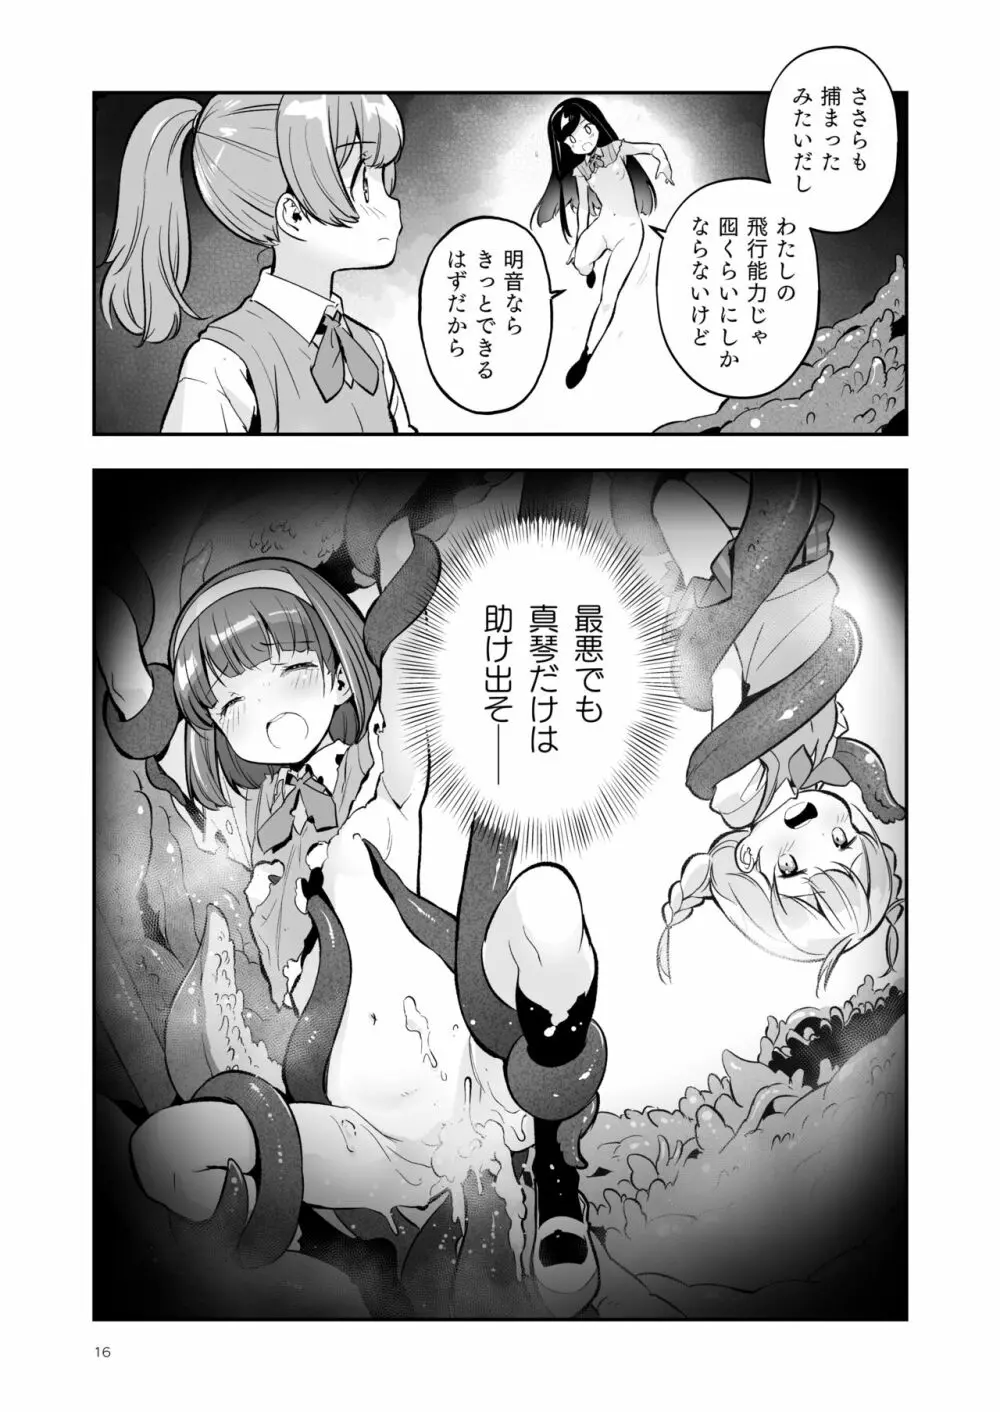 そらとぶうさぎ4 among the tentacles 16ページ